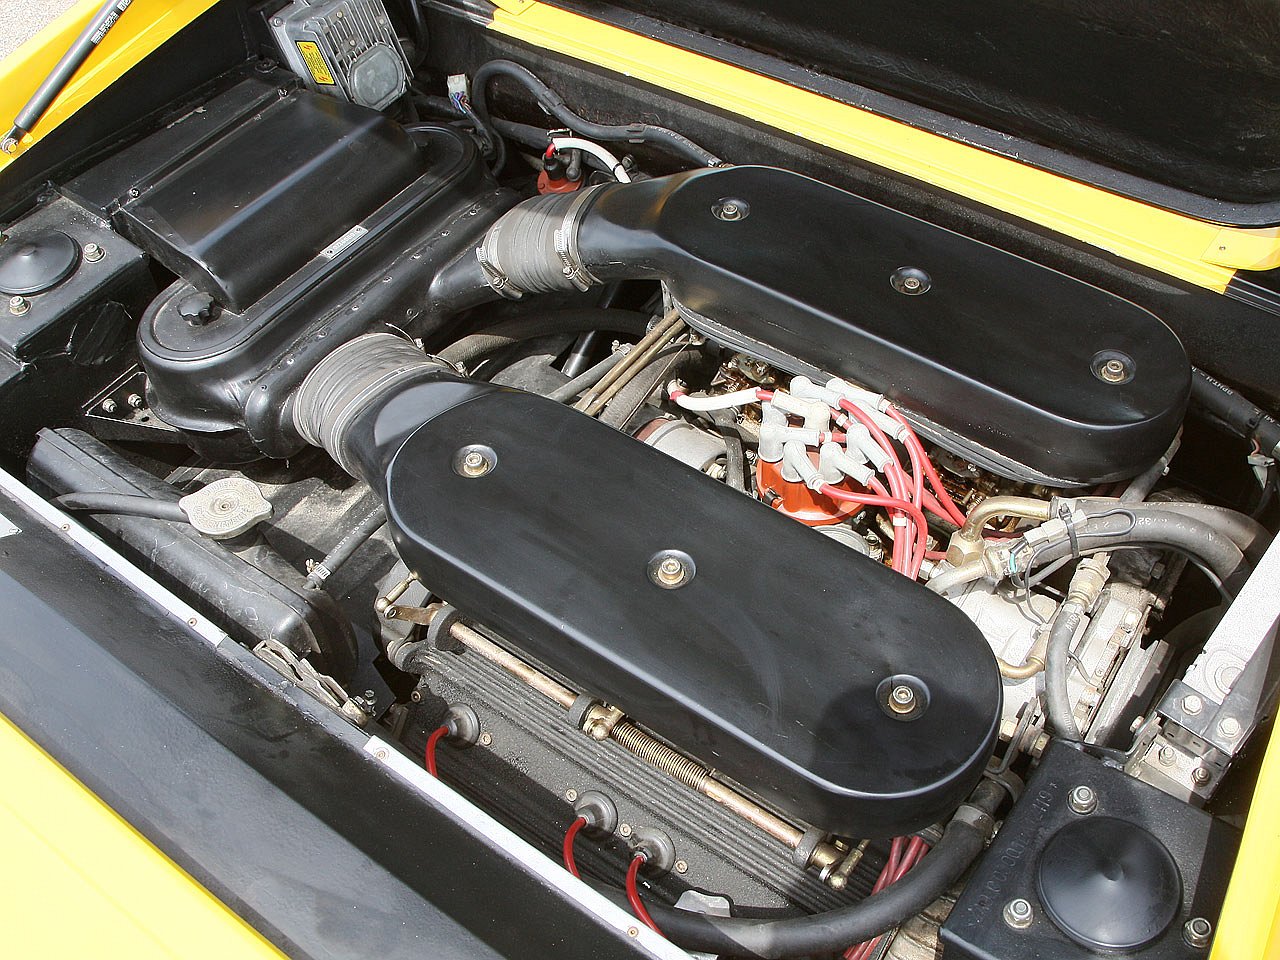 1986 Lamborghini Jalpa 3500 V8 engine